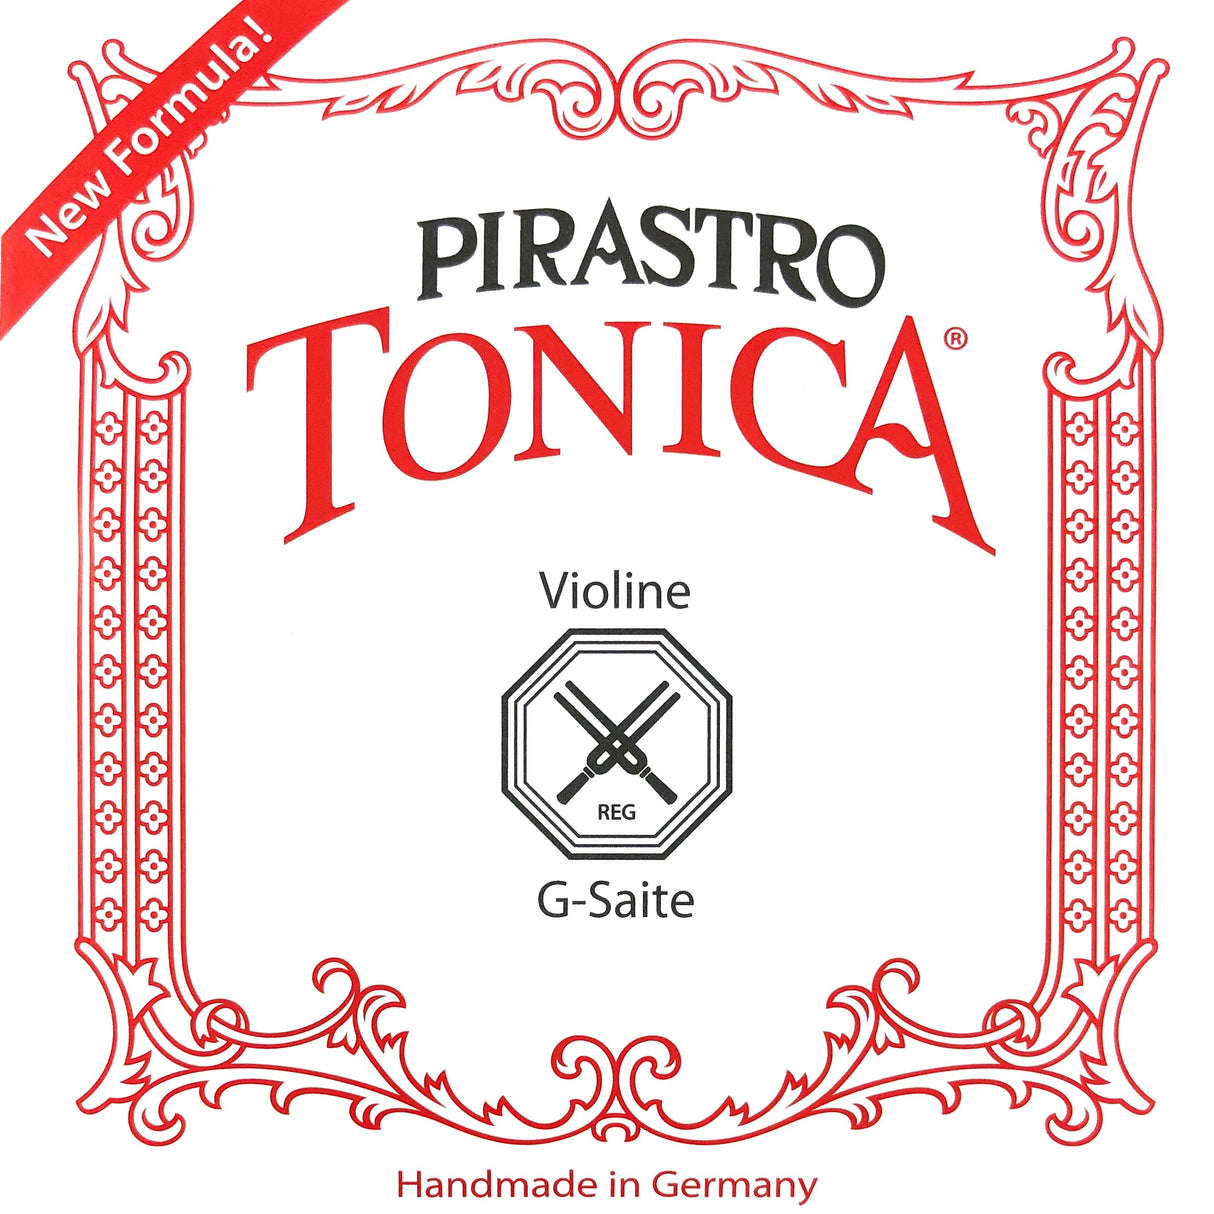 Pirastro Tonica Violin Einzelsaite G mit Kugel 3/4-1/2 - Musik-Ebert Gmbh